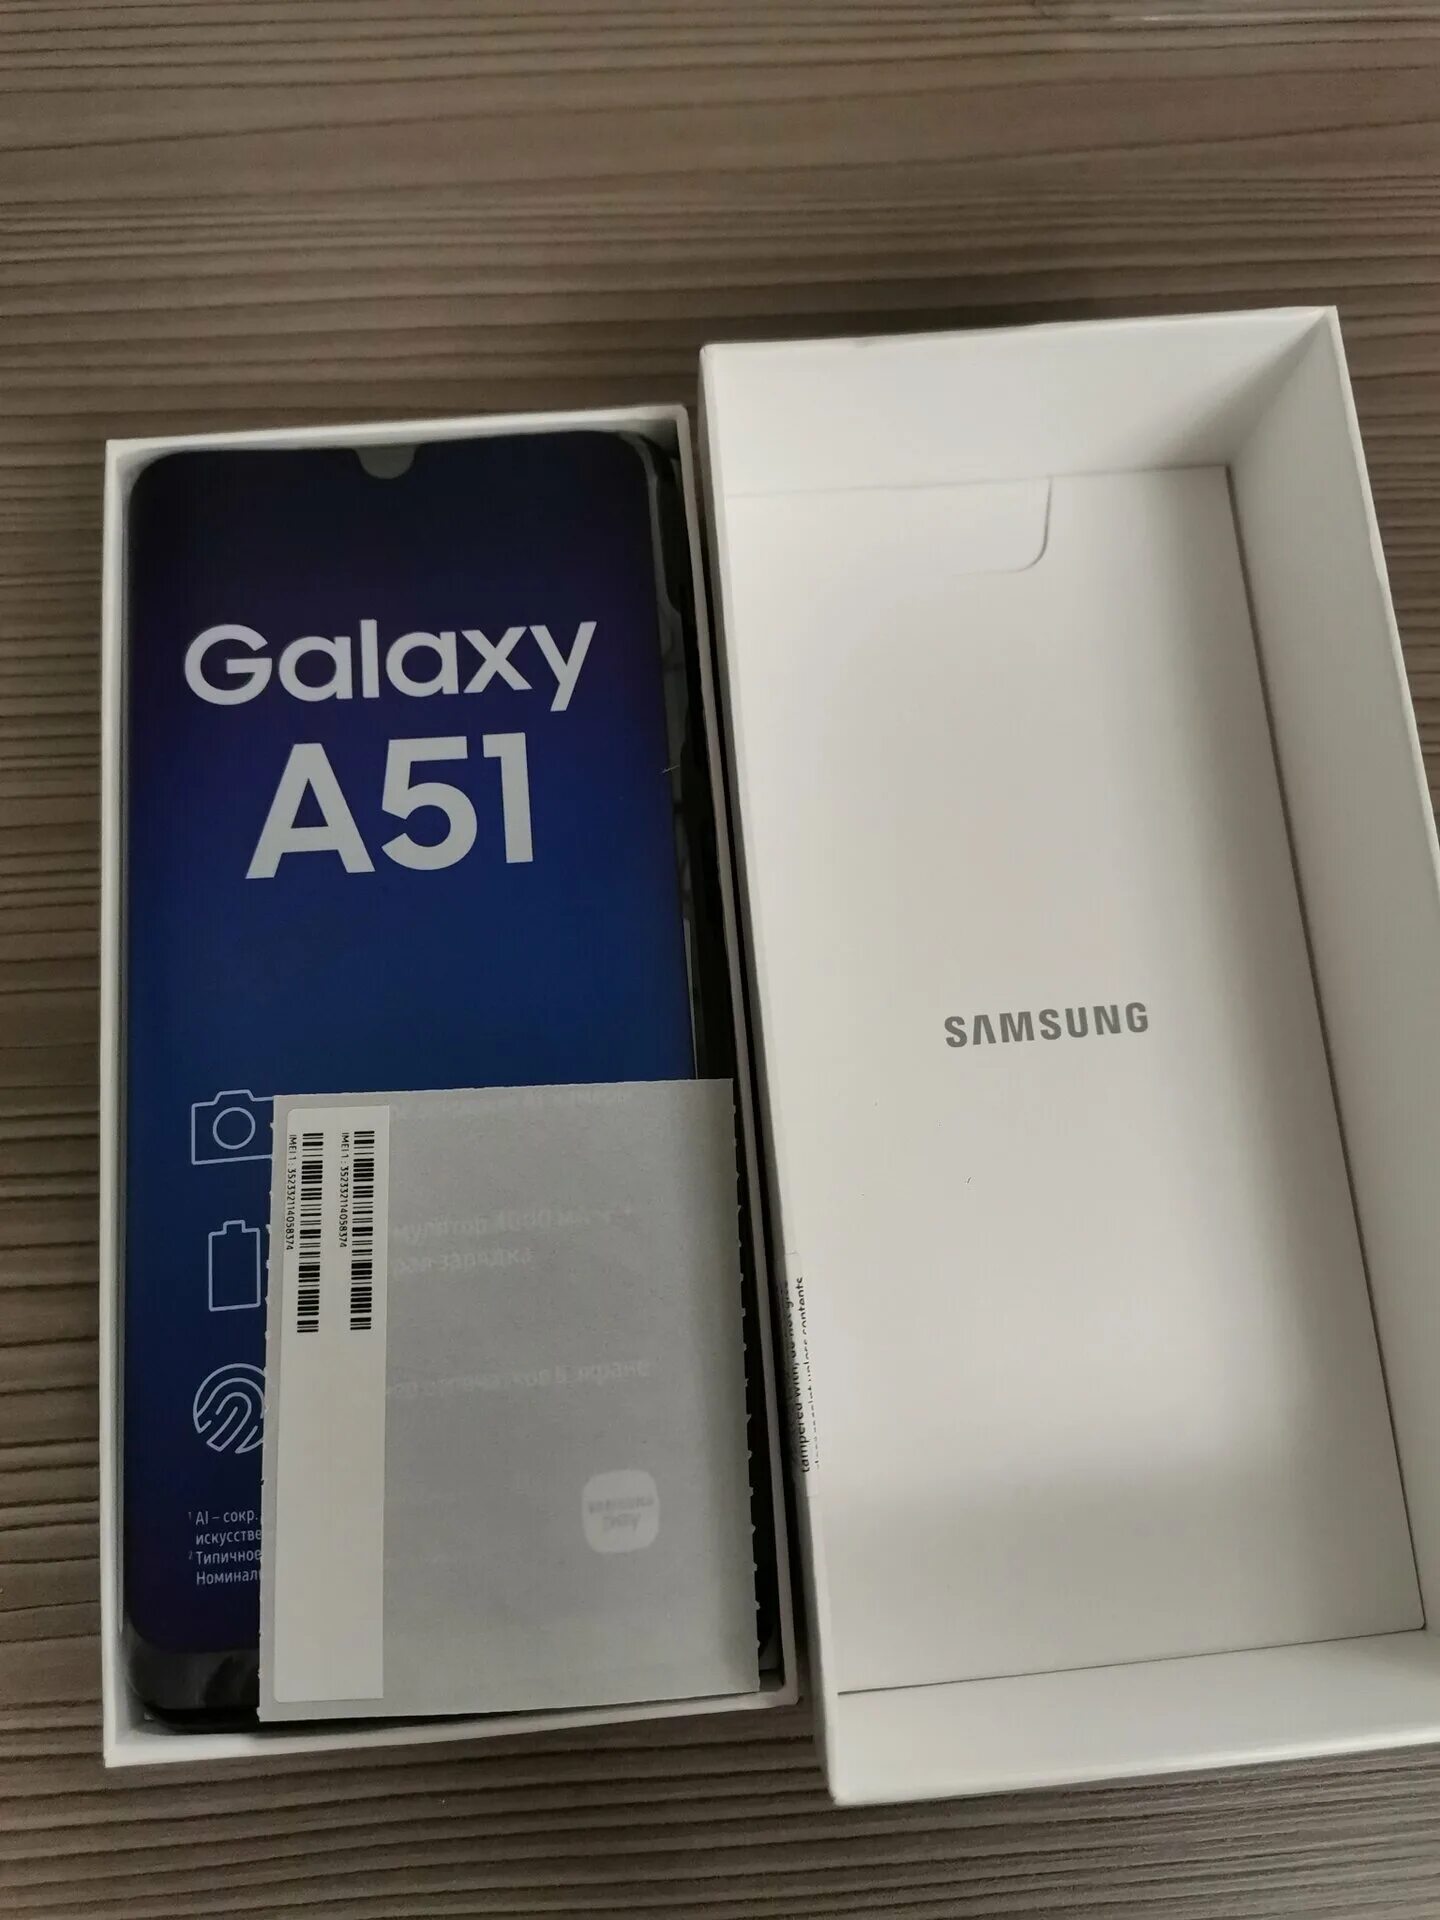 Samsung Galaxy a51 6/128gb. Samsung Galaxy a51 64gb. Samsung Galaxy a51 128gb Black. Samsung Galaxy a51 128gb White. Самсунг а 51 память